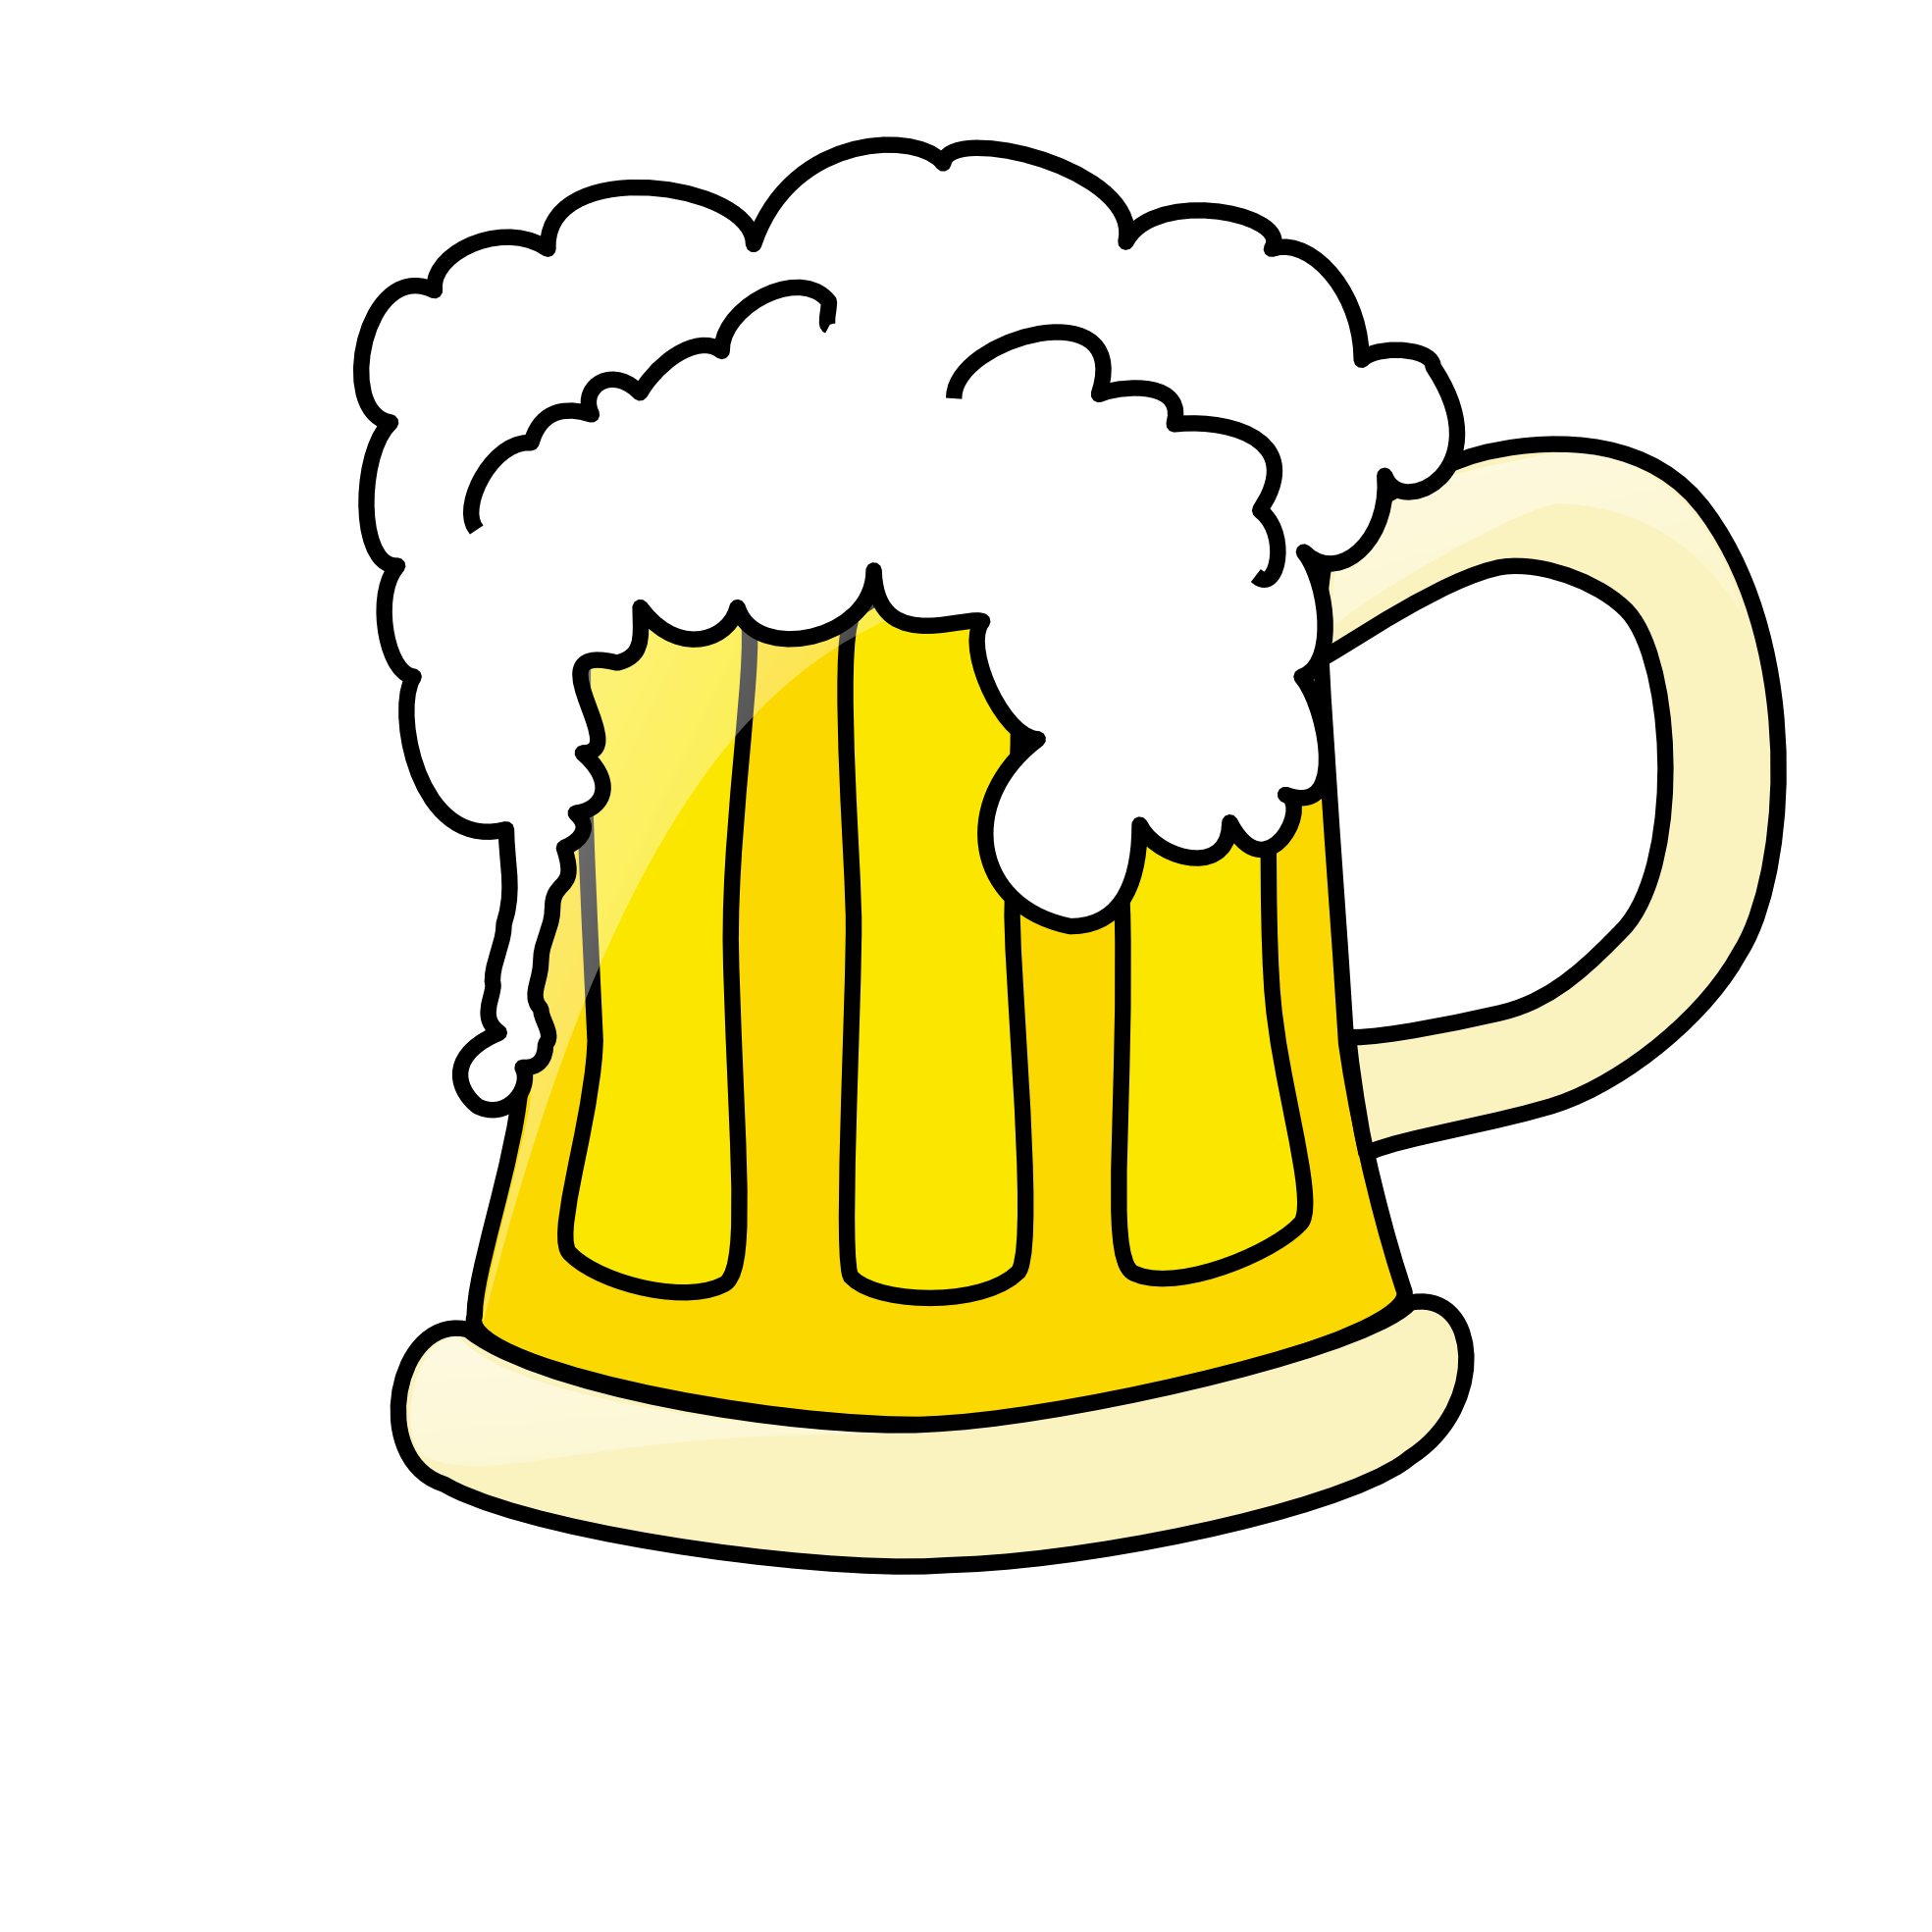 Beer Mug Image 